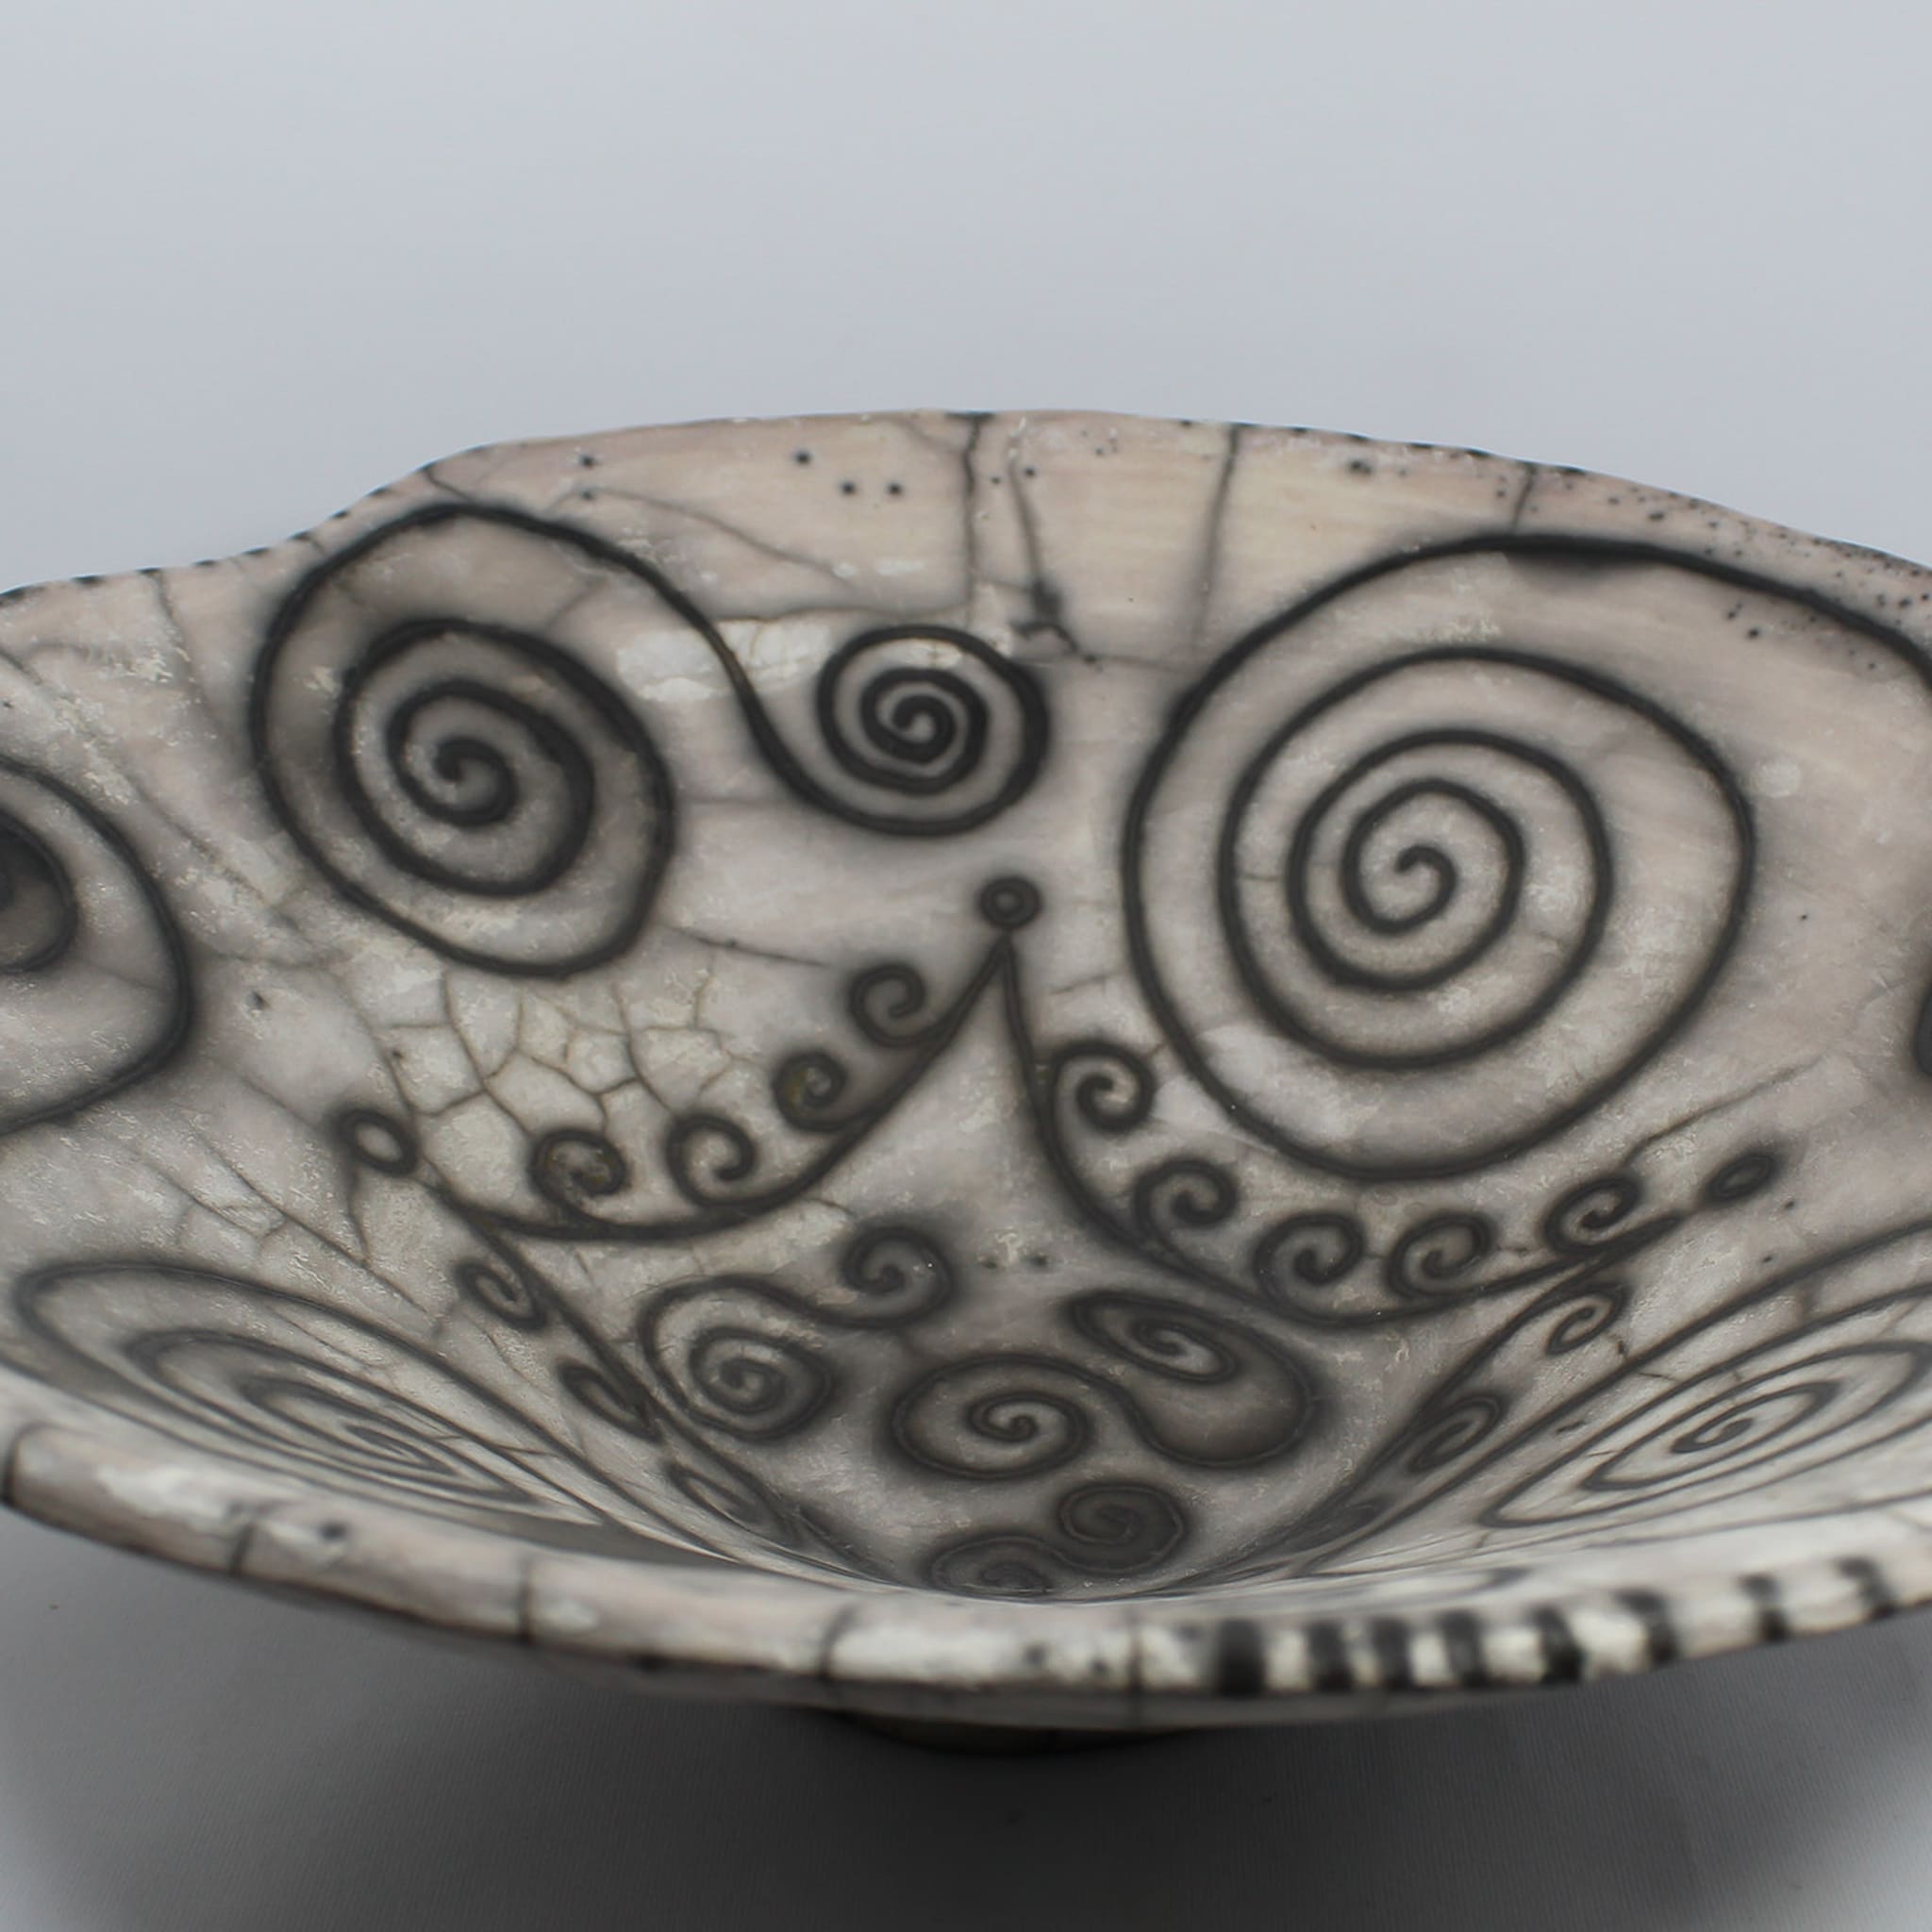 David ceramic bowl - Alternative view 2